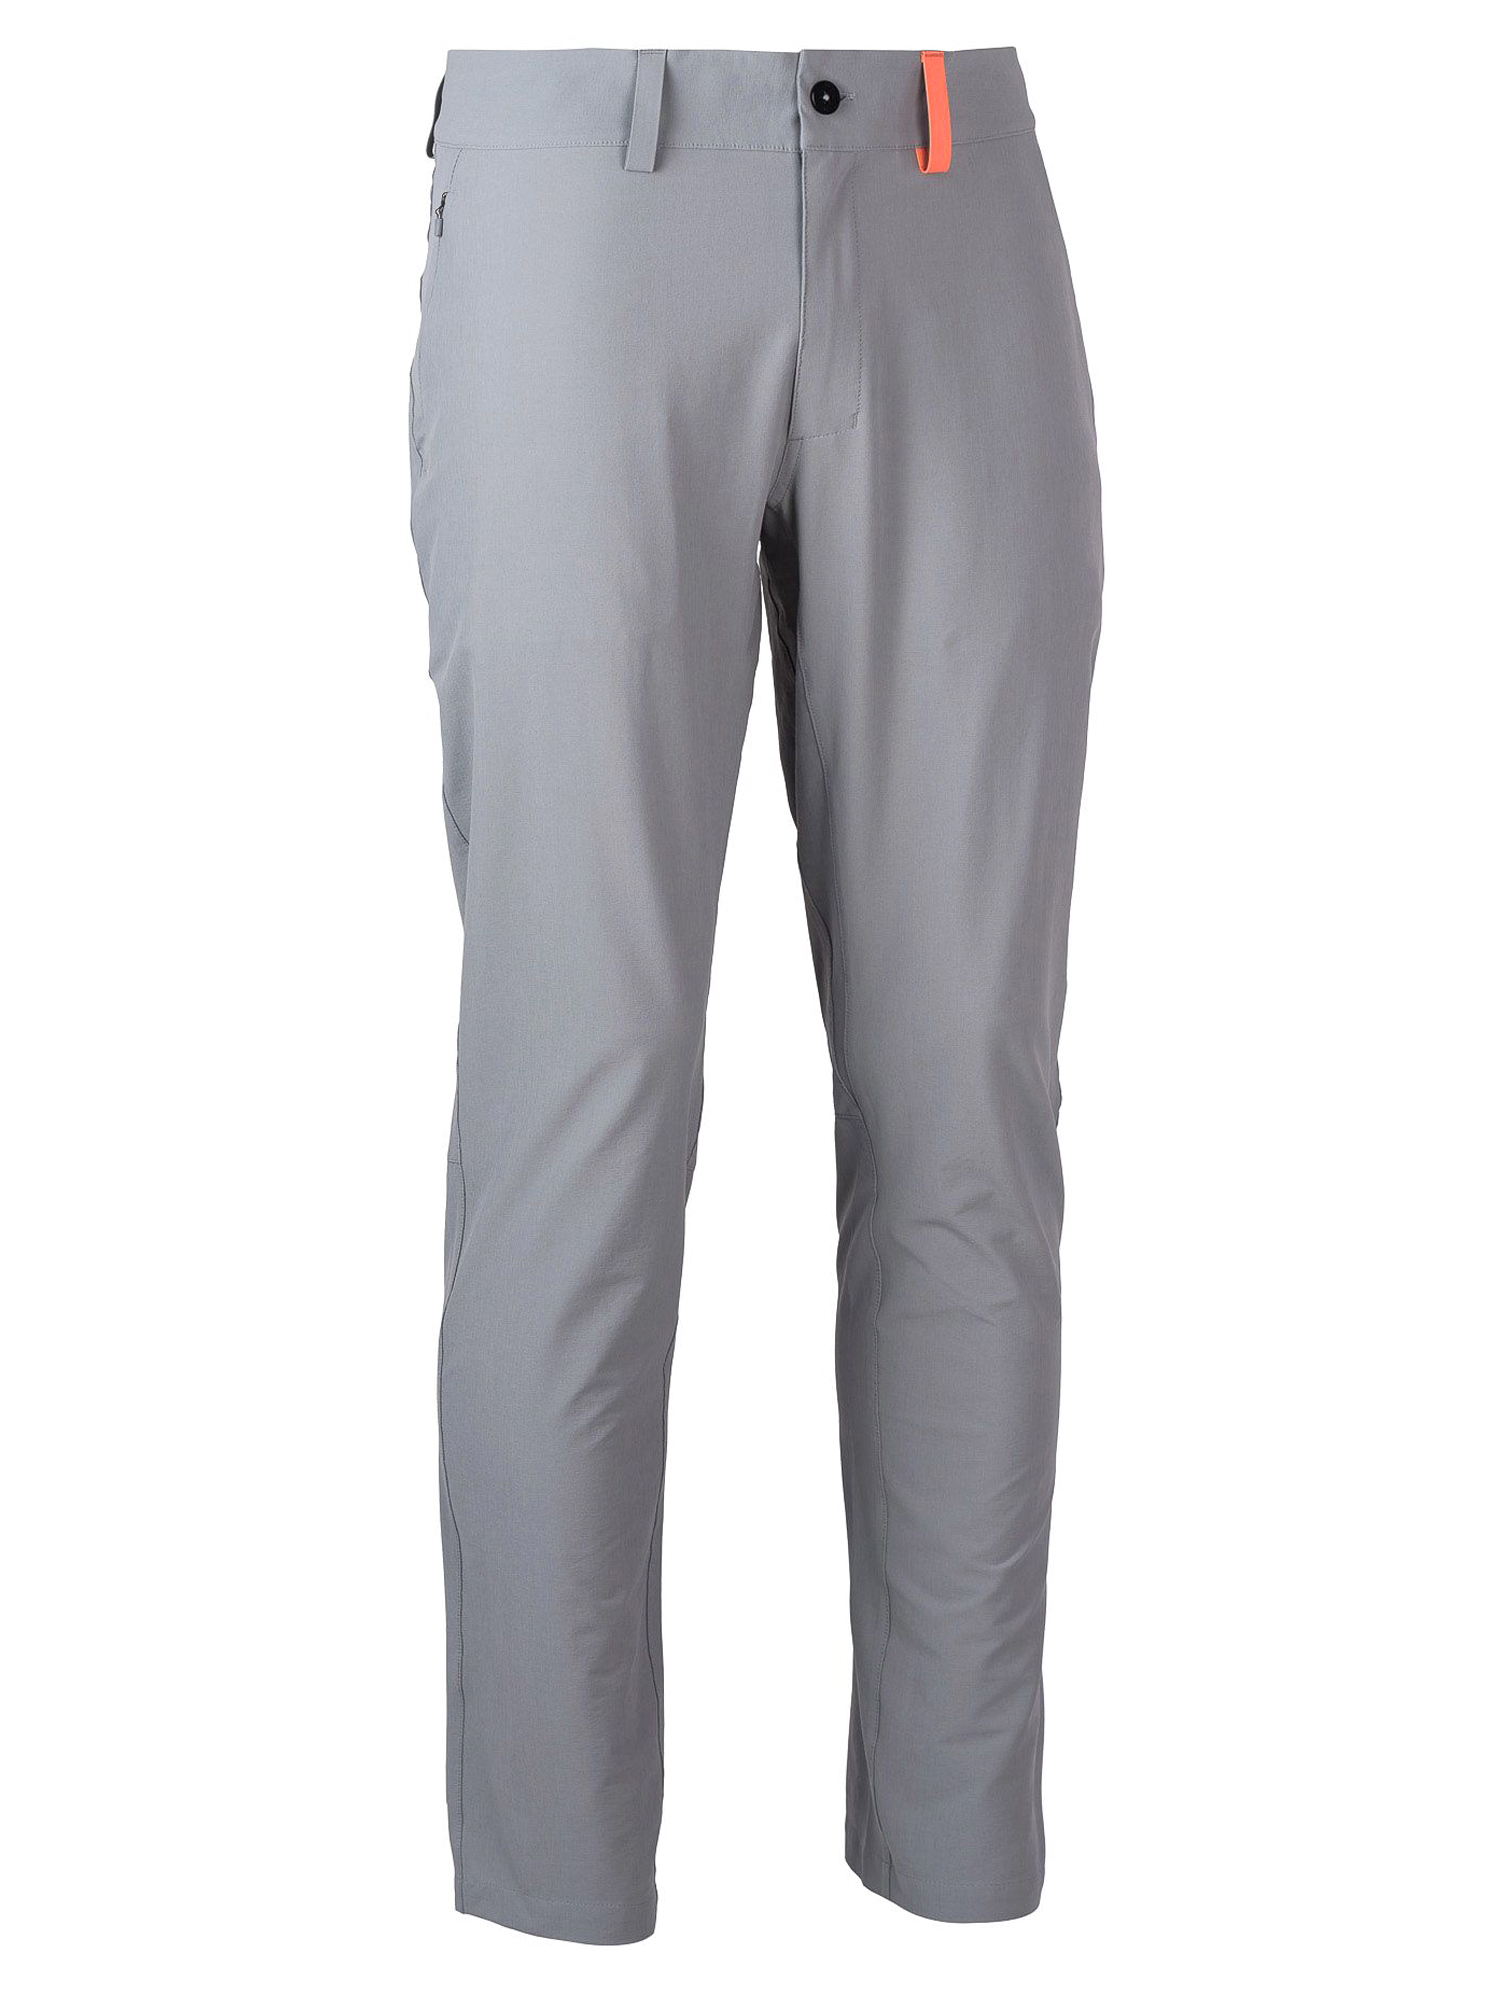 Спортивные брюки мужские Ternua Terra Pt M серые XL